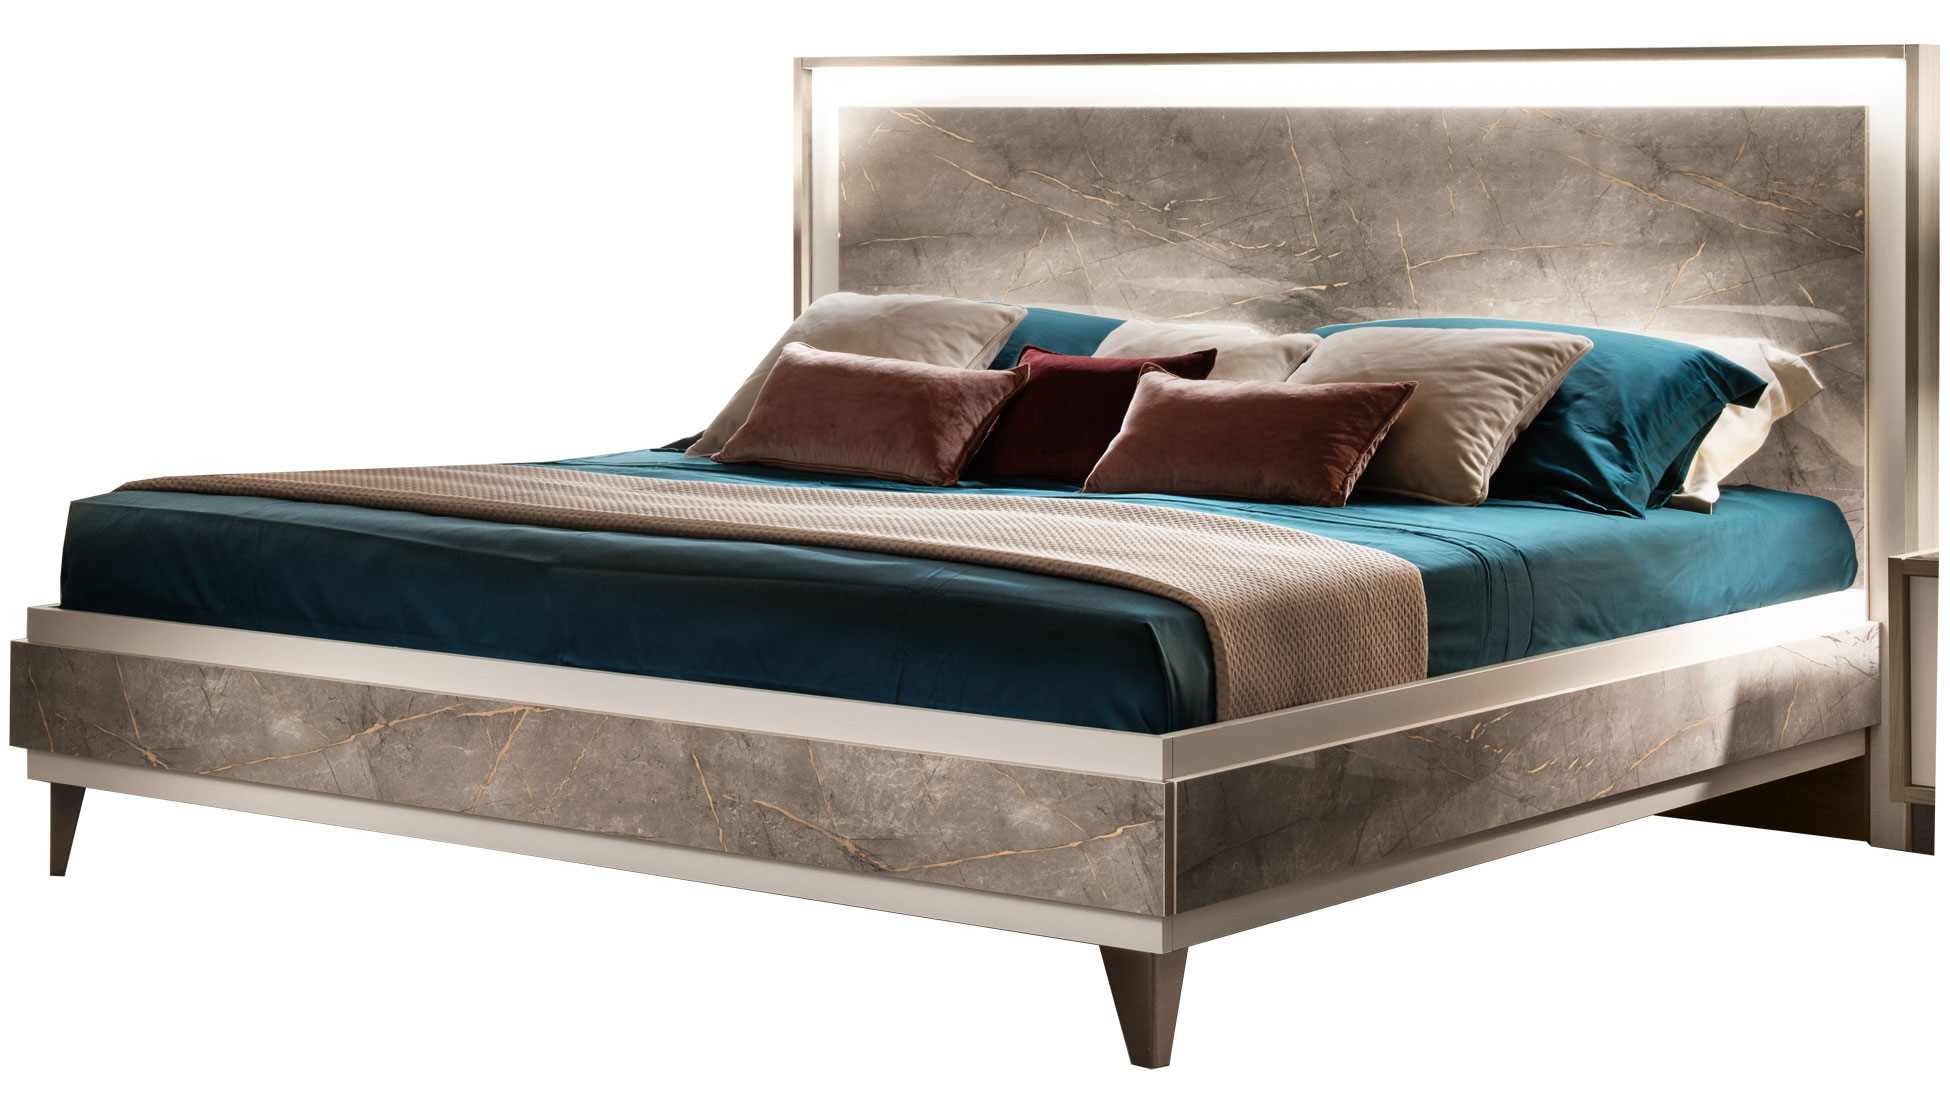 Bedroom Furniture Nightstands ArredoAmbra Bed by Arredoclassic